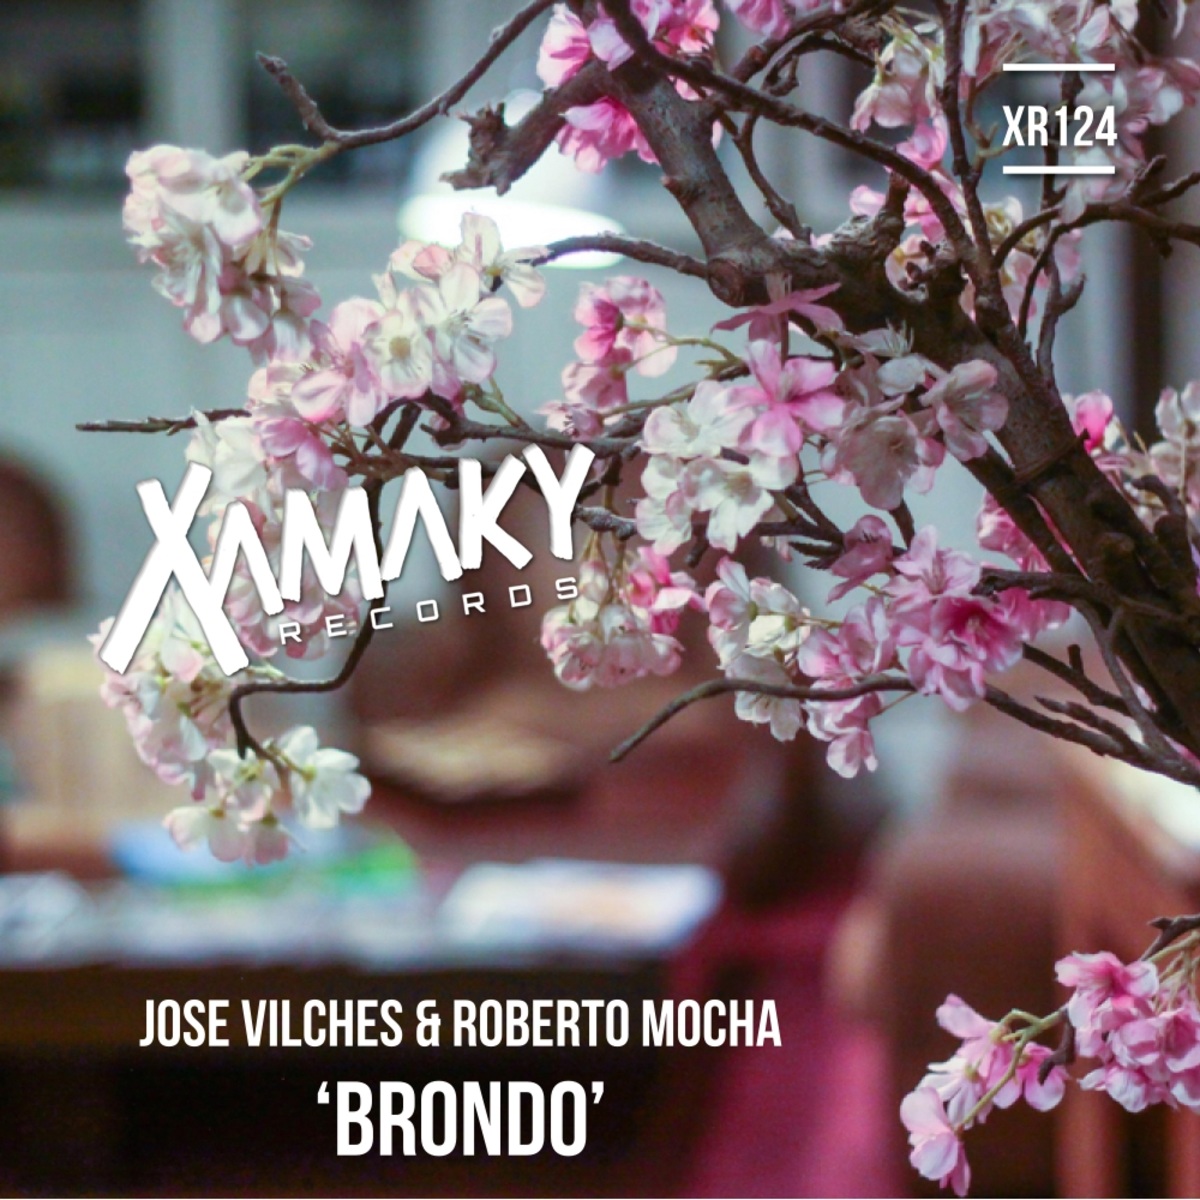 Jose Vilches & Roberto Mocha - Brondo / Xamaky Records